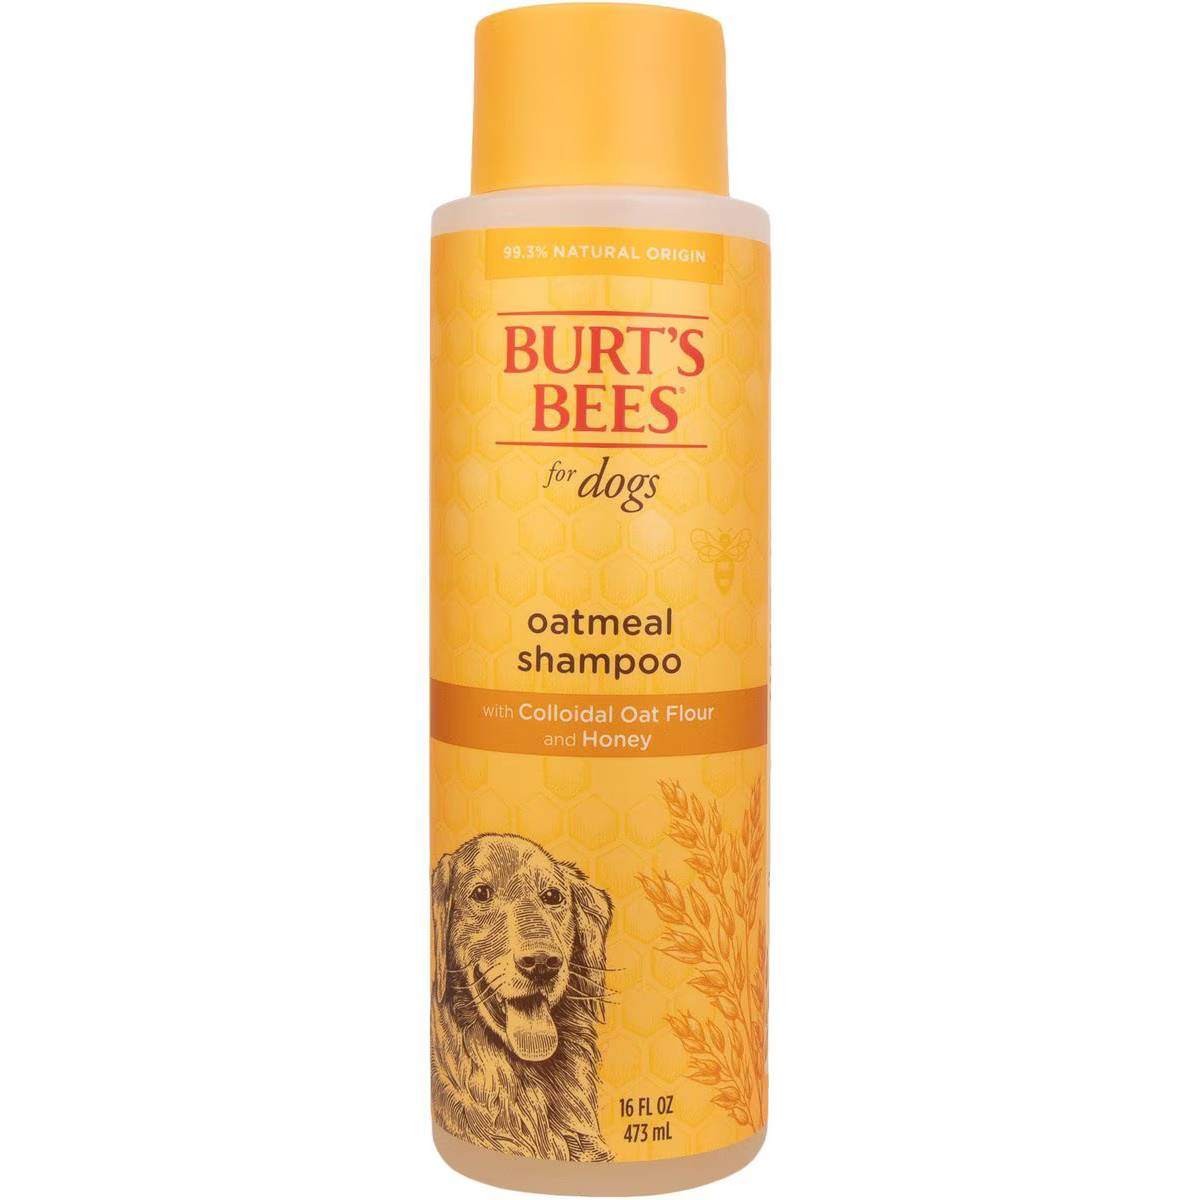 Burt's Bees Oatmeal with Colloidal Oat Flour & Honey Dog Shampoo